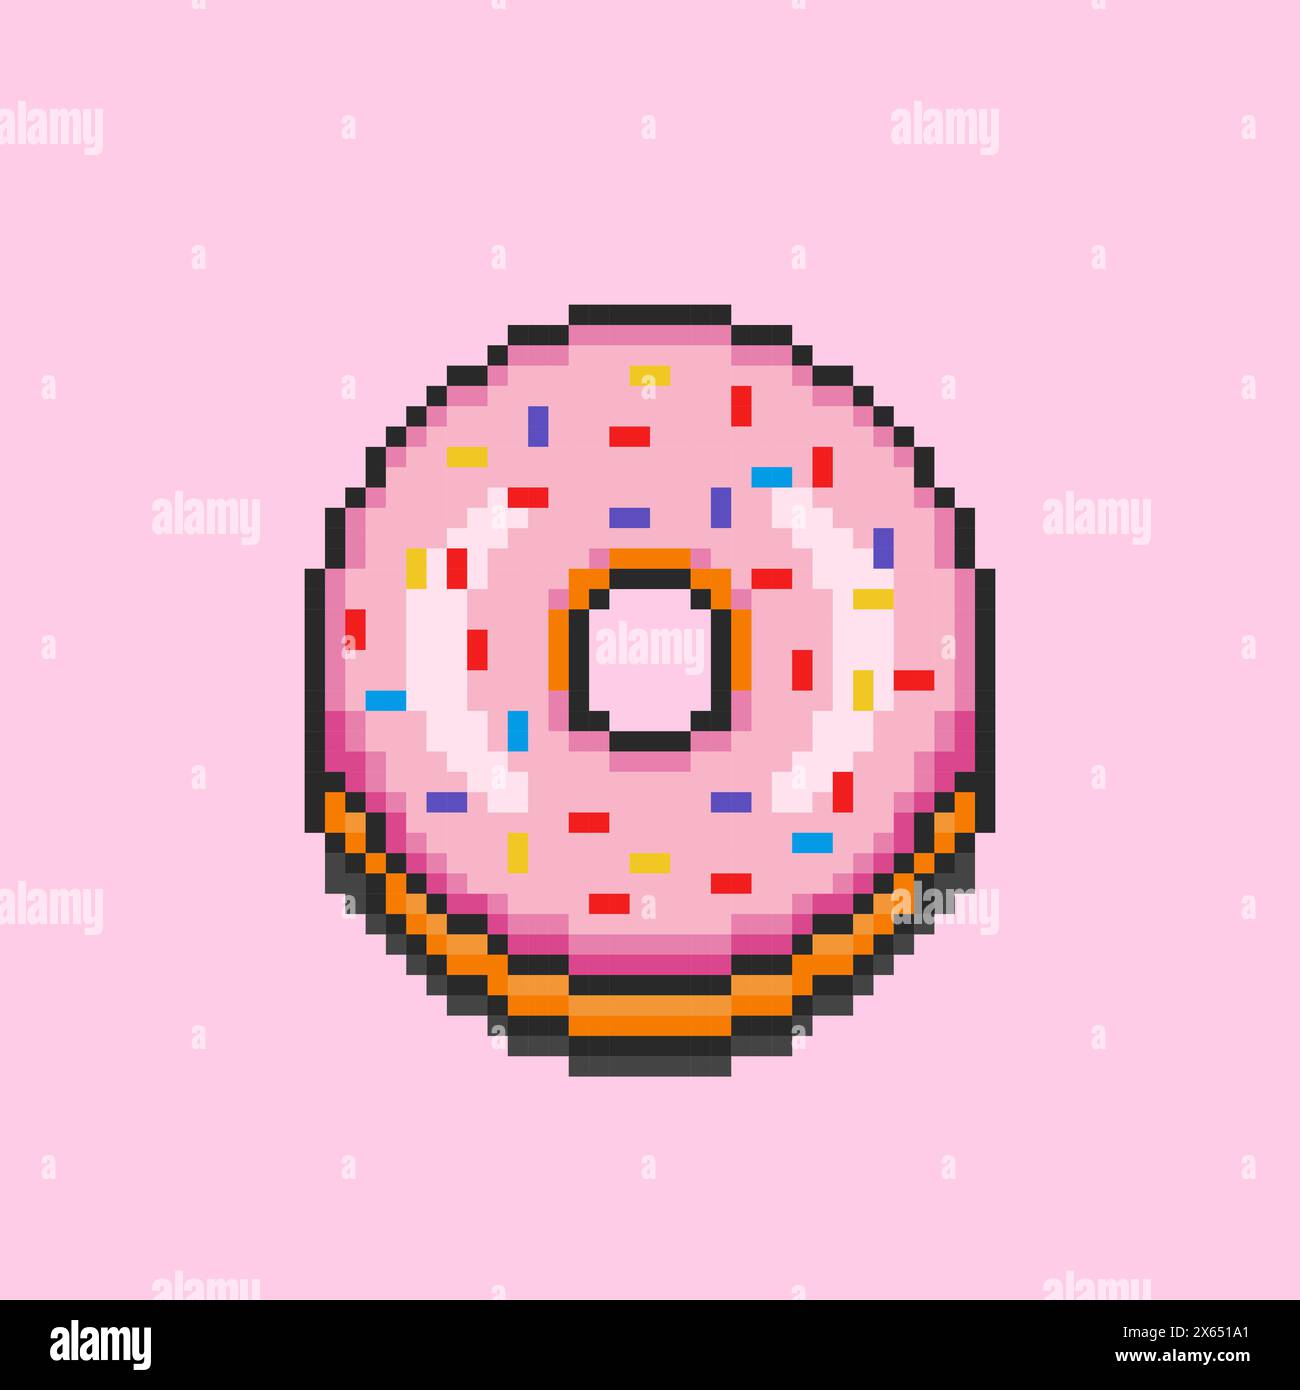 Pixel art donuts food design Stock Vector